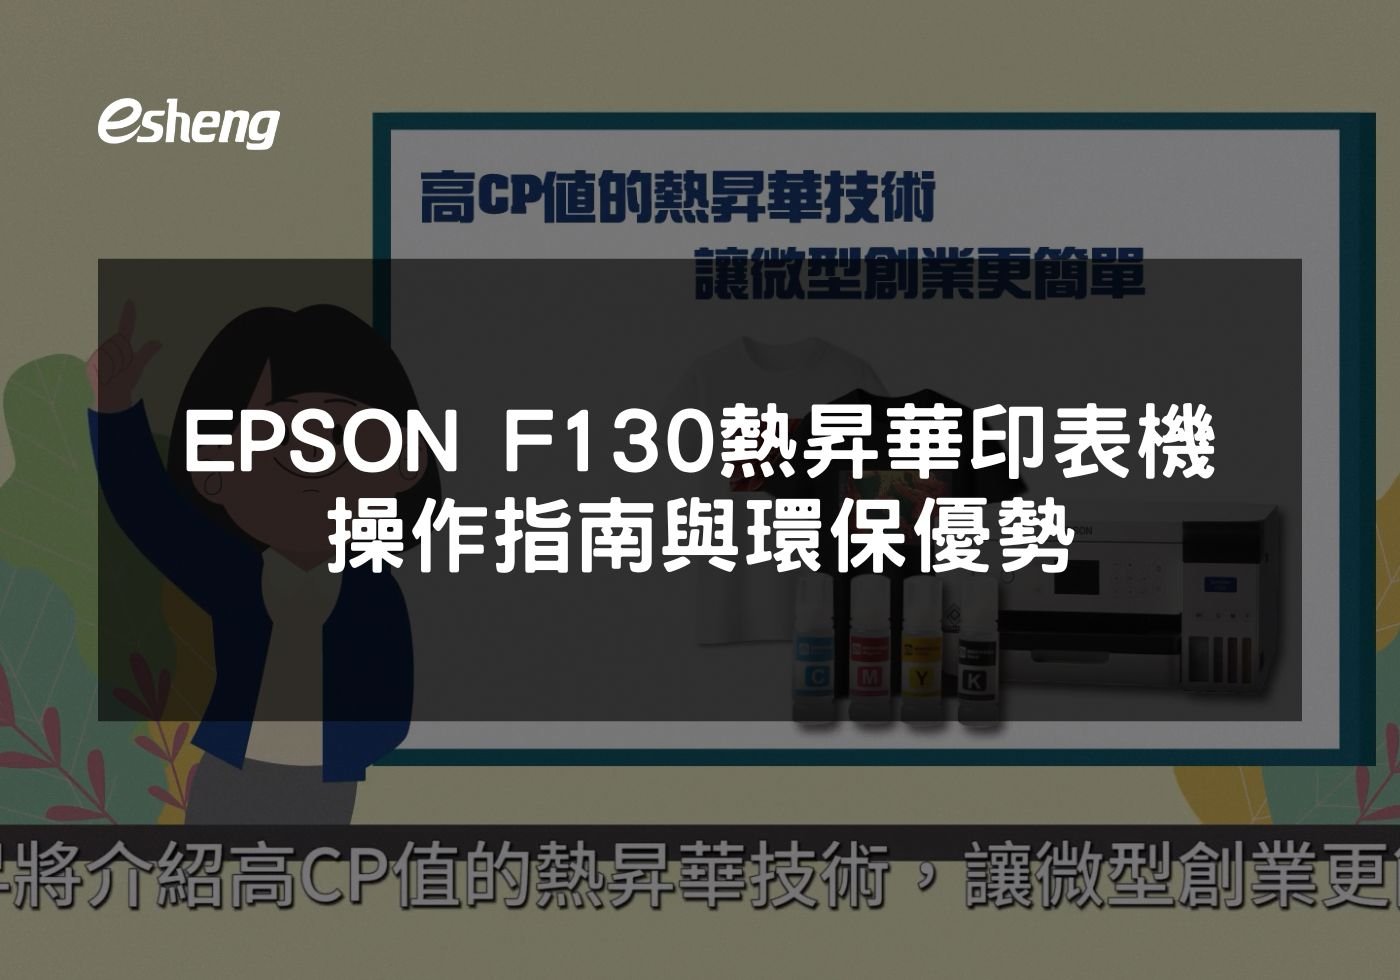 閱讀更多文章 EPSON F130熱昇華印表機操作指南與環保優勢